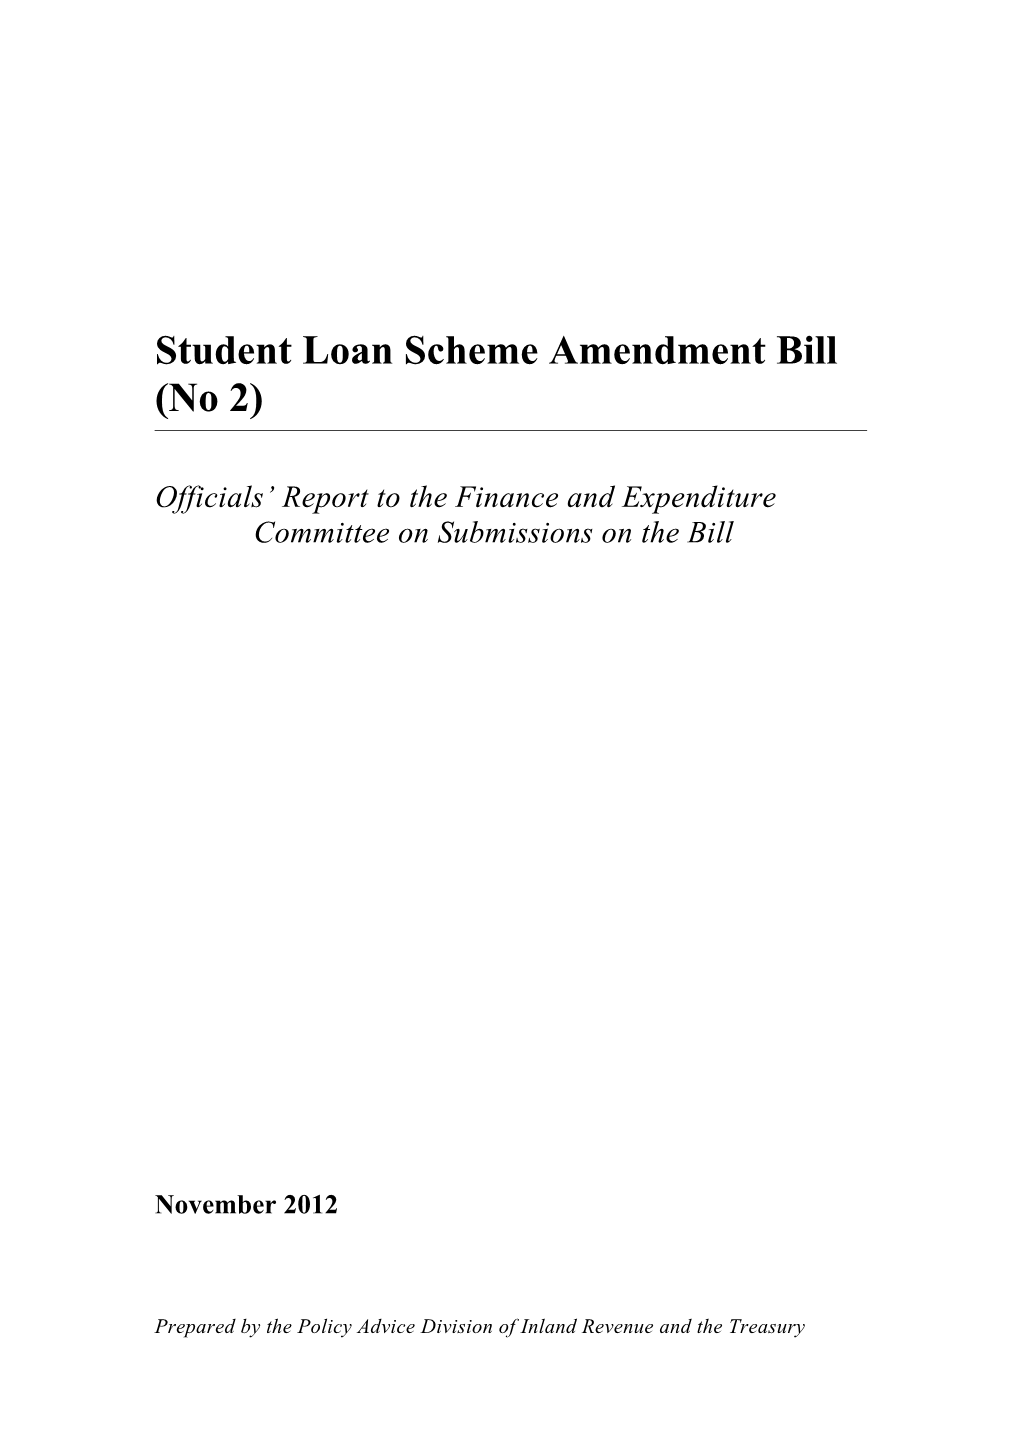 Student Loan Scheme Amendment Bill (No 2) - Officials' Report to FEC